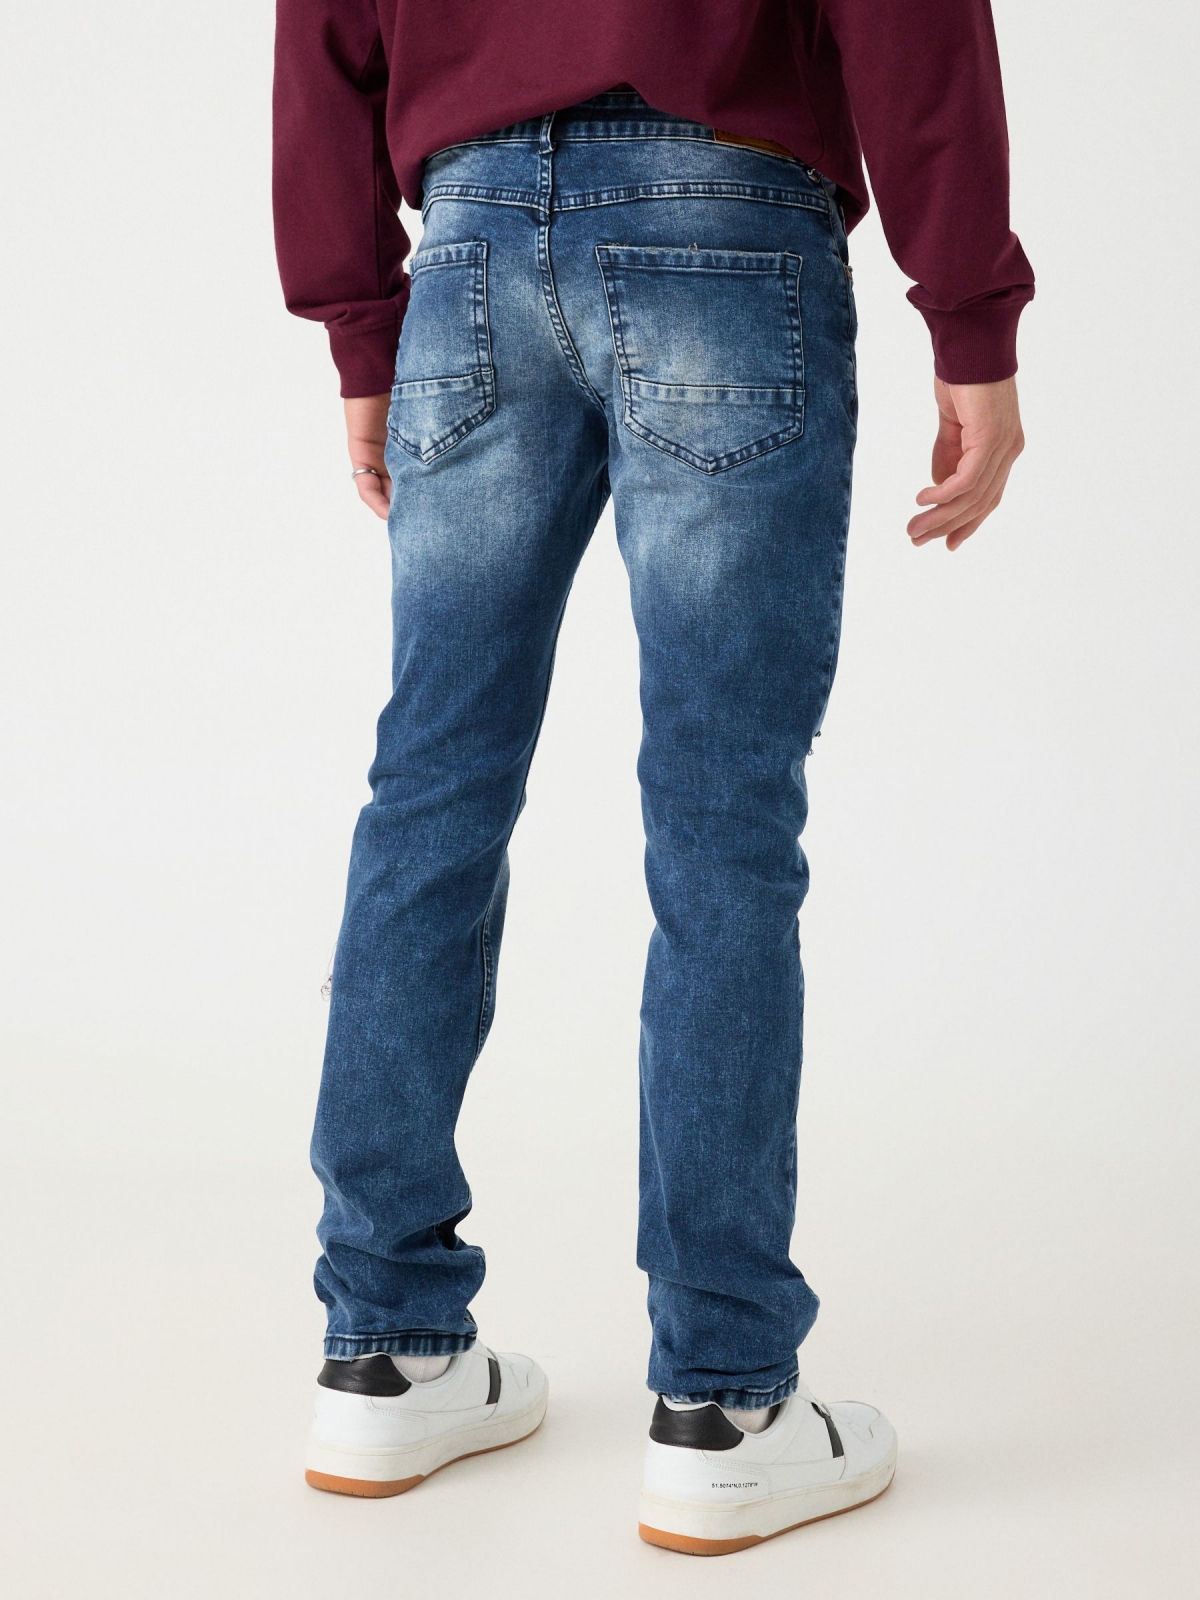 Jeans regular desgastado azul marino vista media trasera